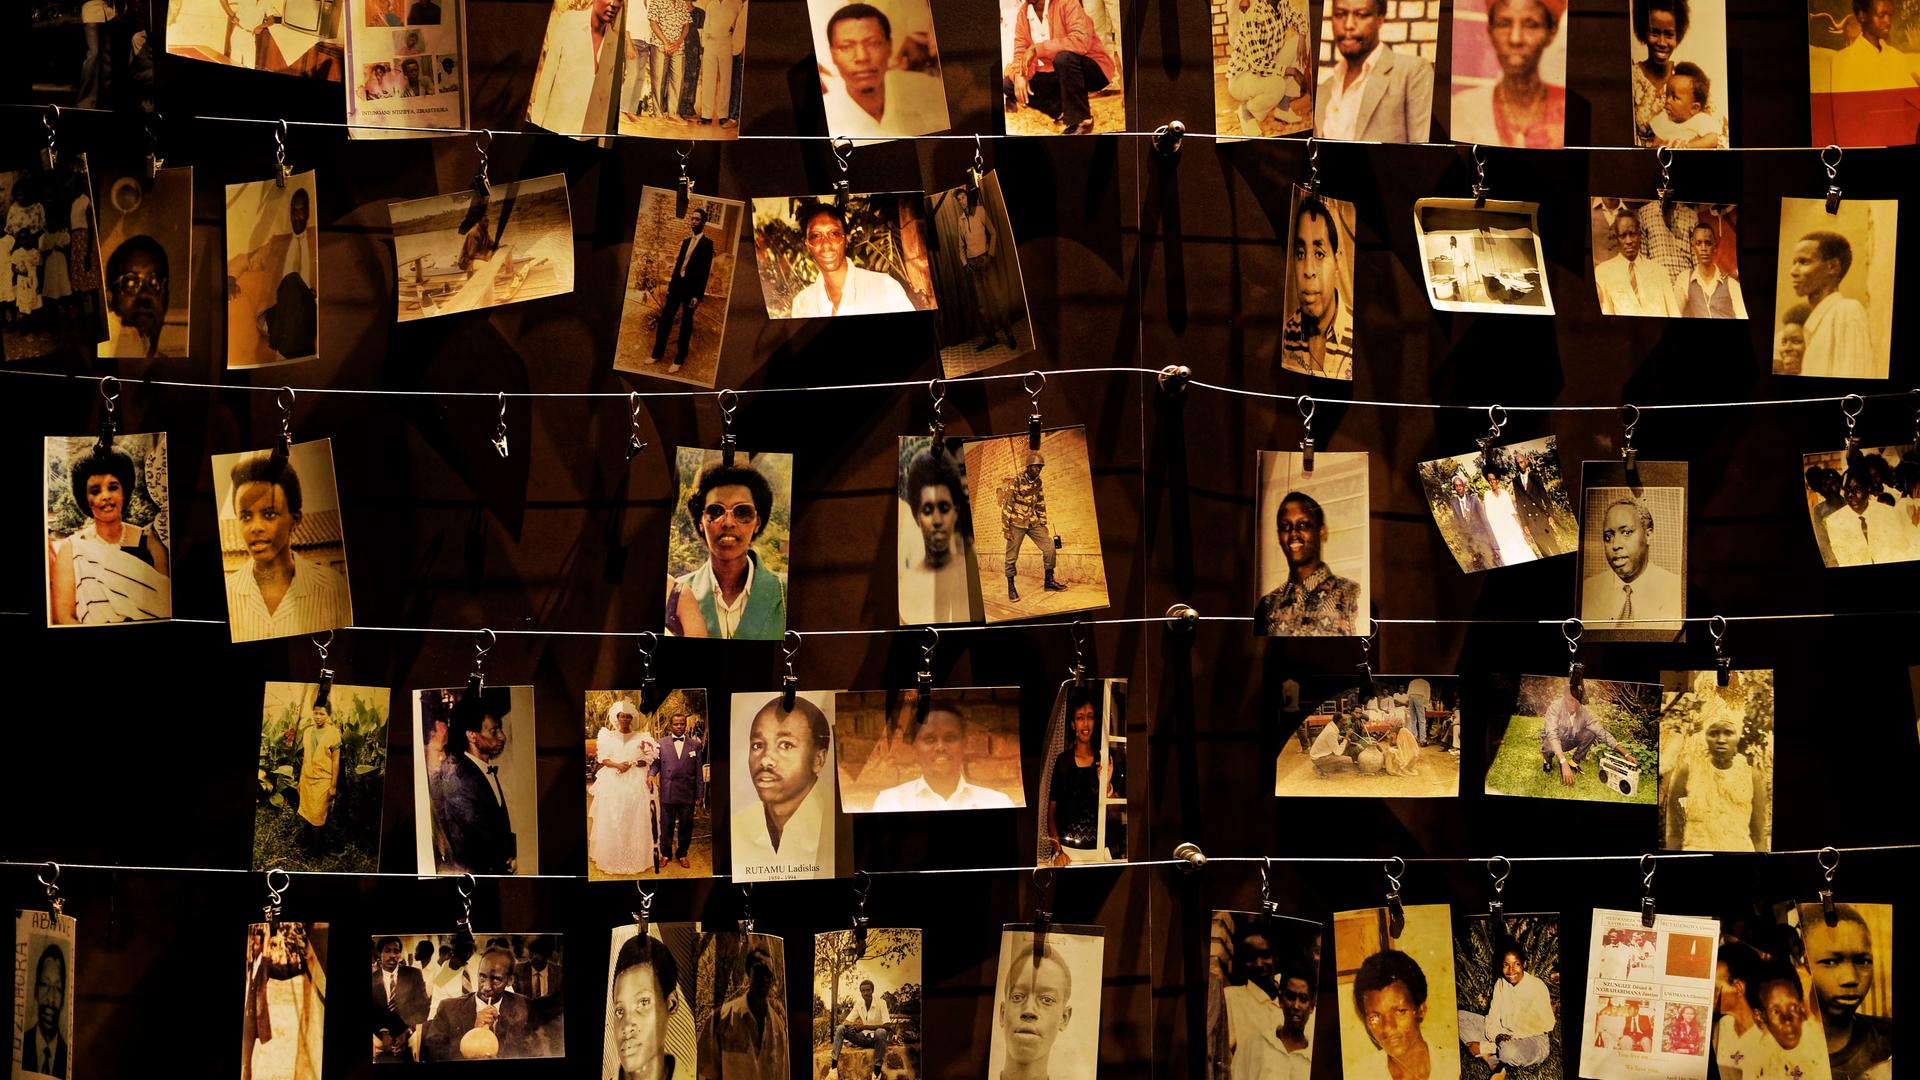 Bilder von einigen der Opfer, die 1994 während des Genozids in Ruanda umgebracht wurden.